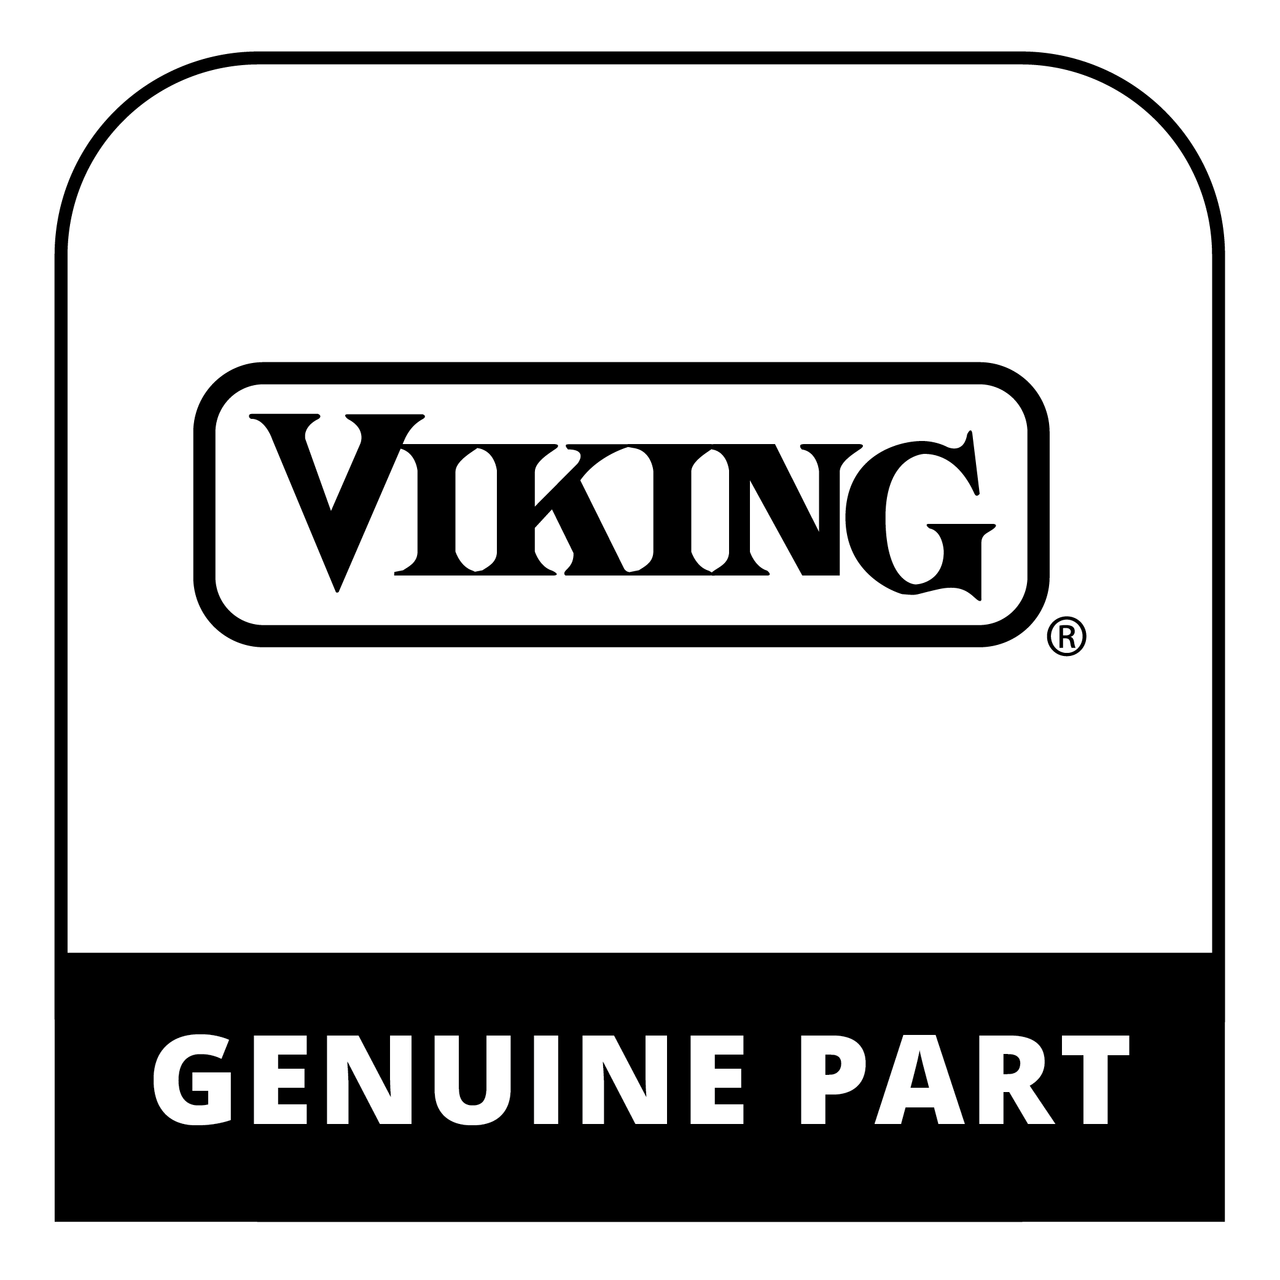 Viking 019501-000 - 36" LOUVERED CURB BASE KIT - Genuine Viking Part